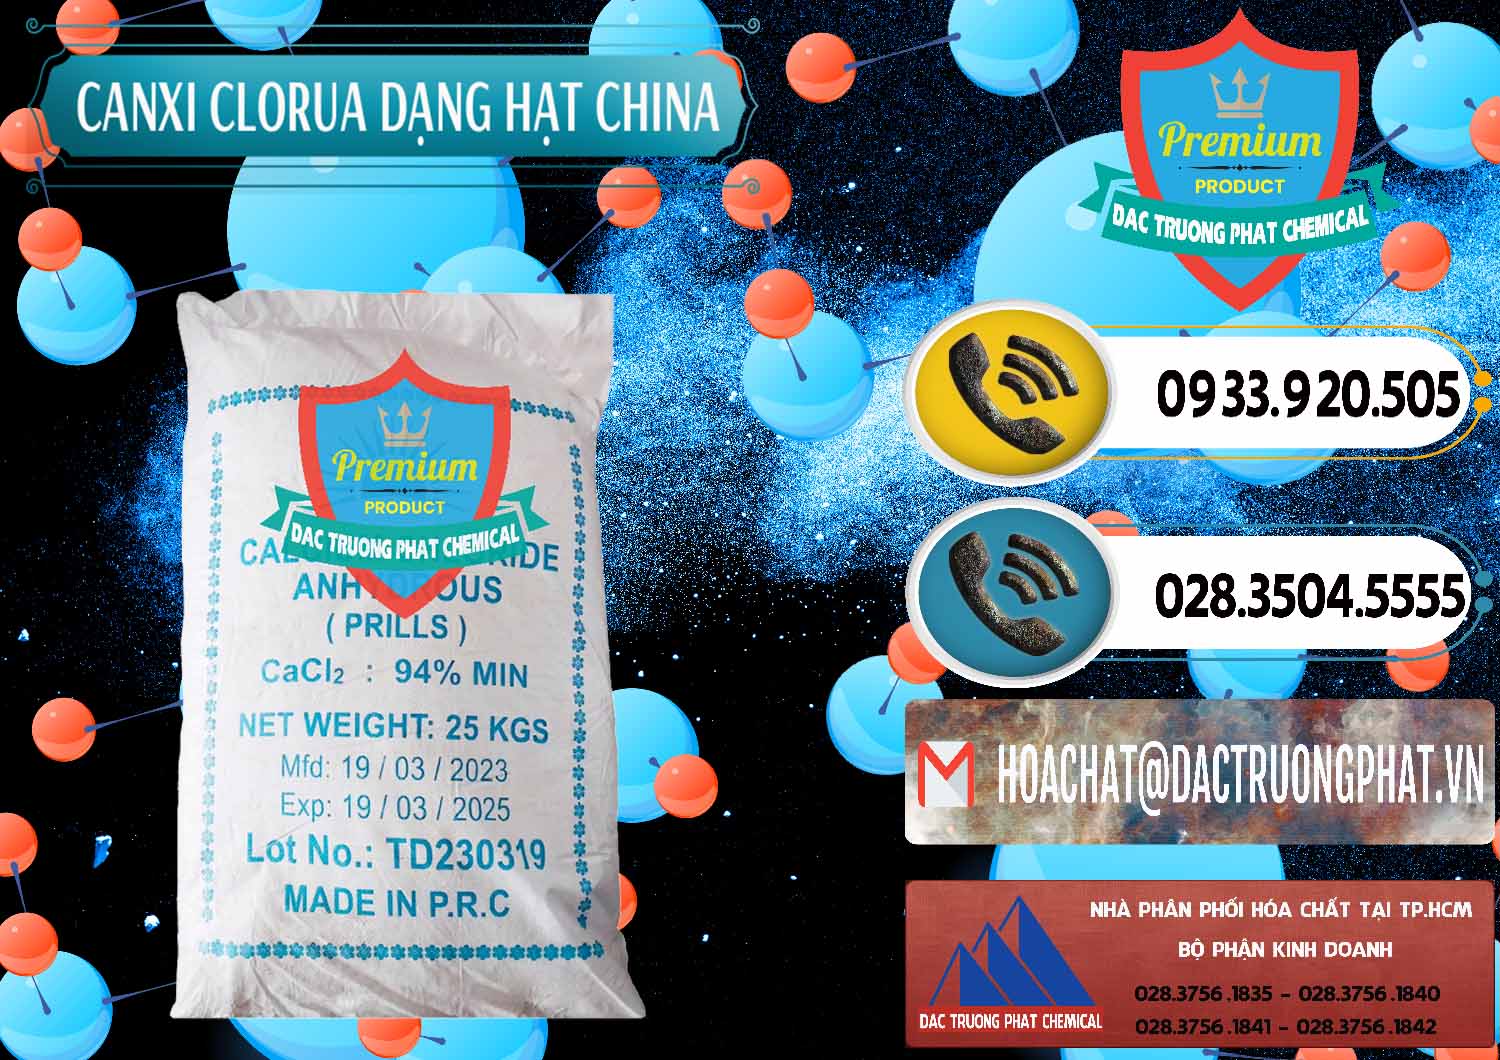 Đơn vị chuyên cung ứng và bán CaCl2 – Canxi Clorua 94% Dạng Hạt Trung Quốc China - 0373 - Phân phối và cung cấp hóa chất tại TP.HCM - hoachatdetnhuom.vn